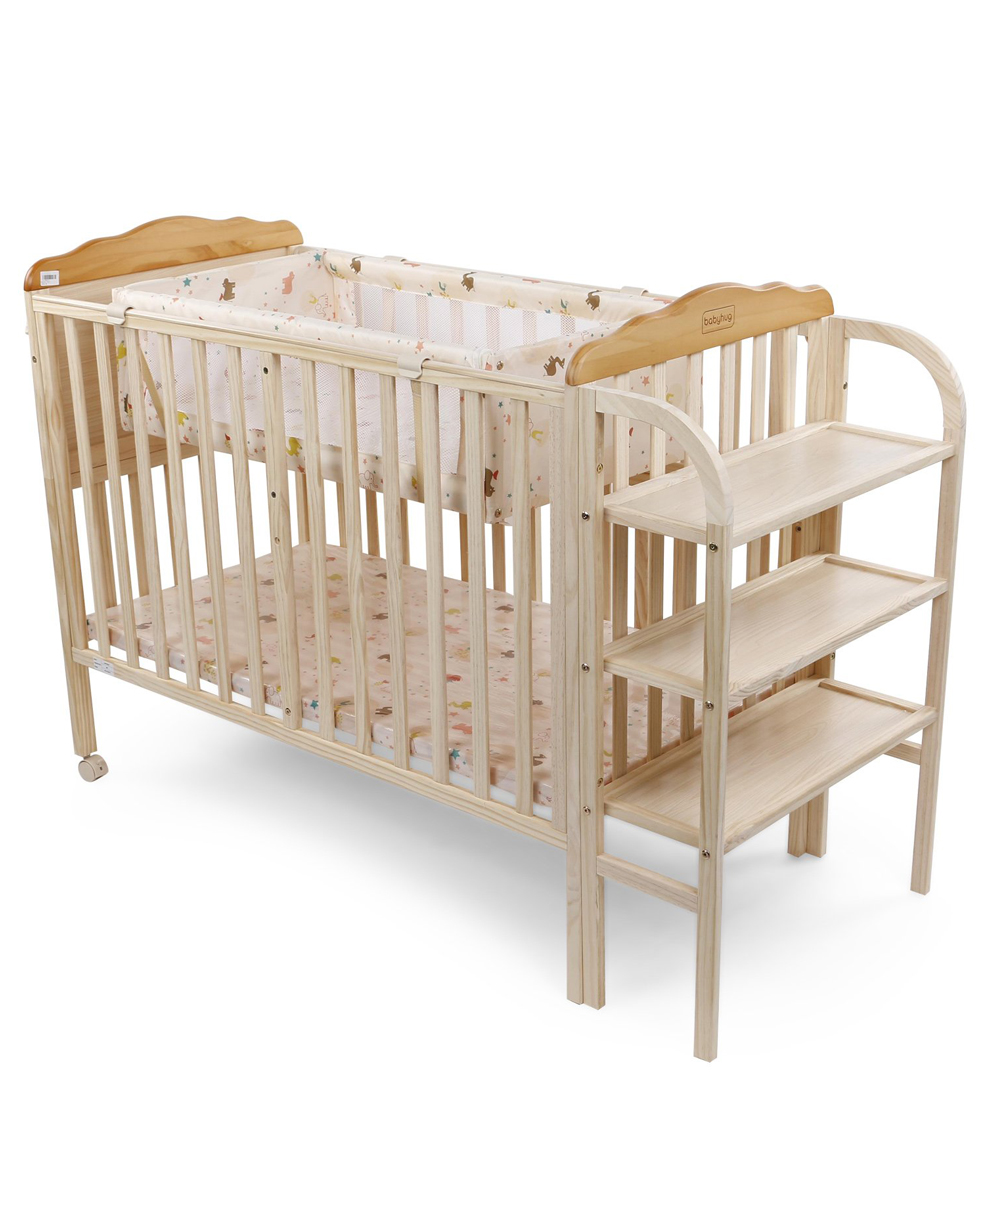 babyhug wooden cradle